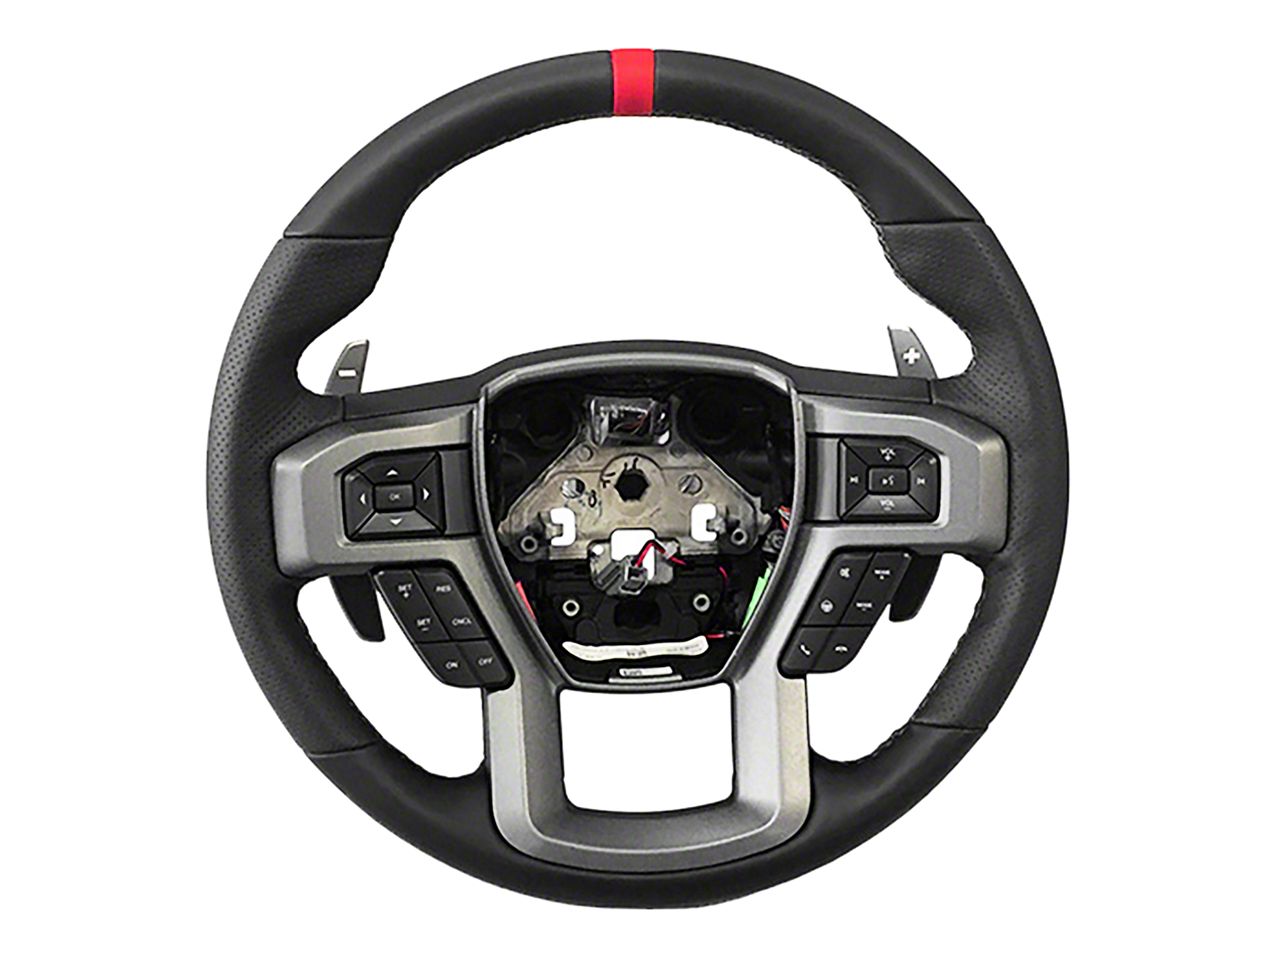 Ram 1500 Steering Wheels & Accessories 2009-2018